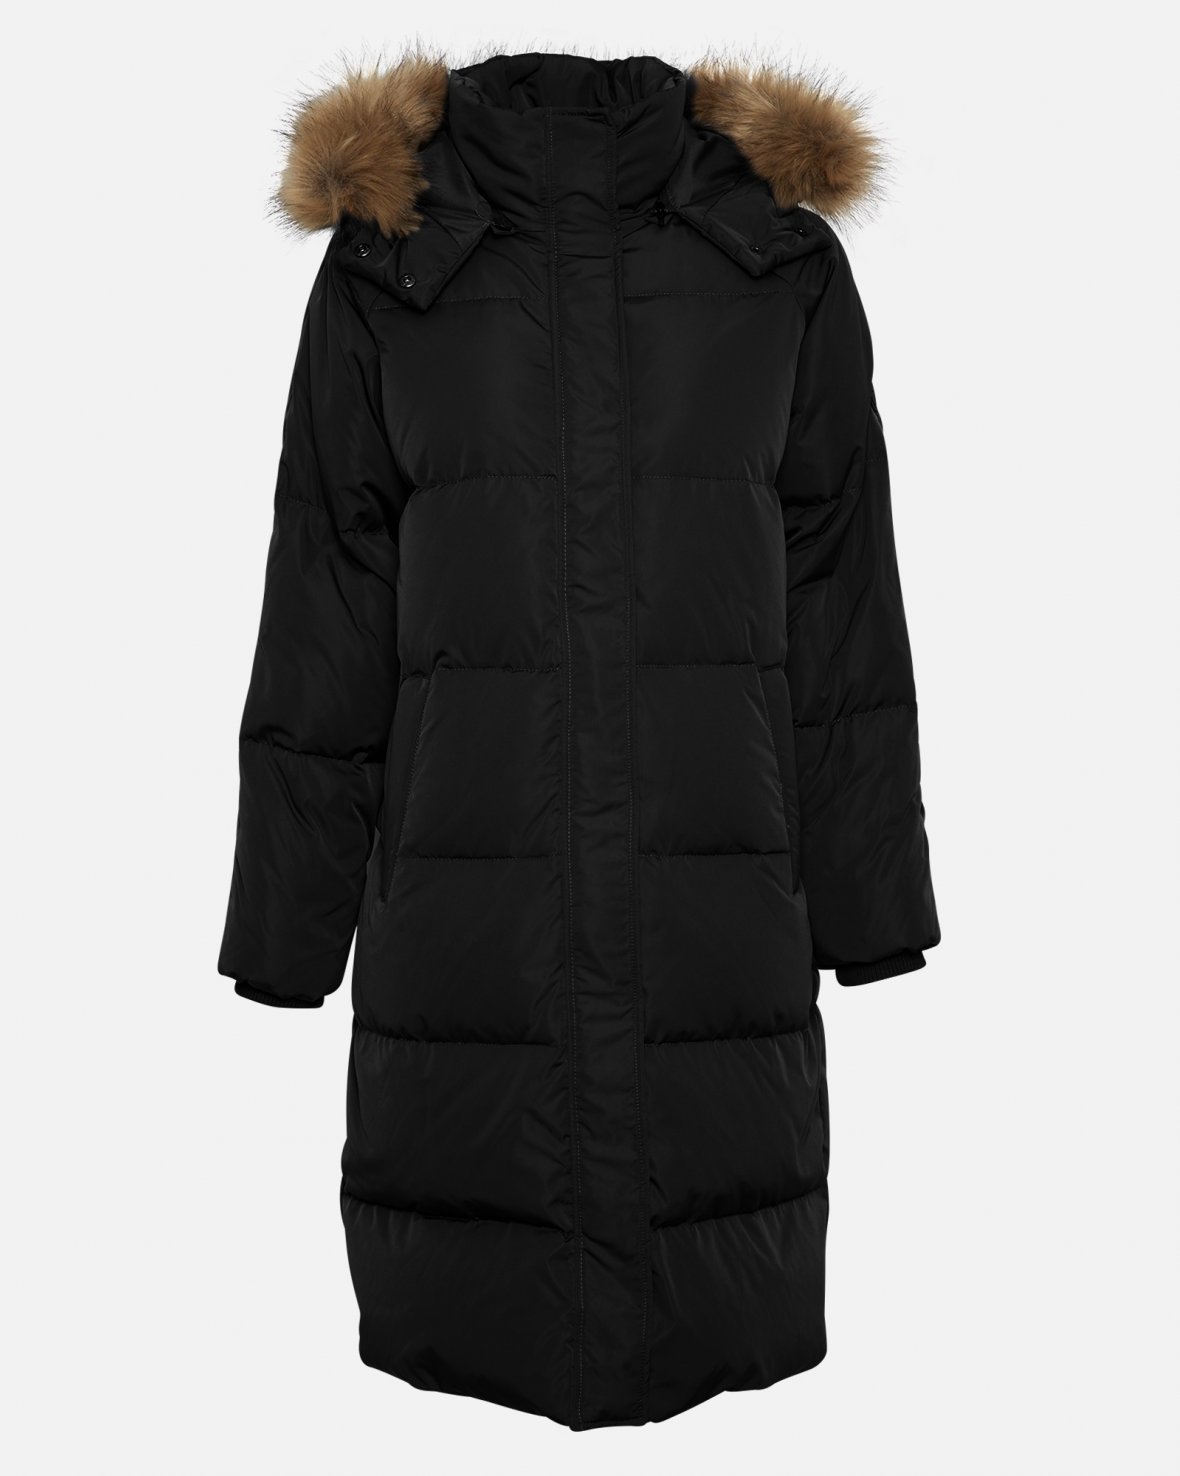 Buy Moss Copenhagen Skylar Down Jacket - Scandinavian Fashion Store